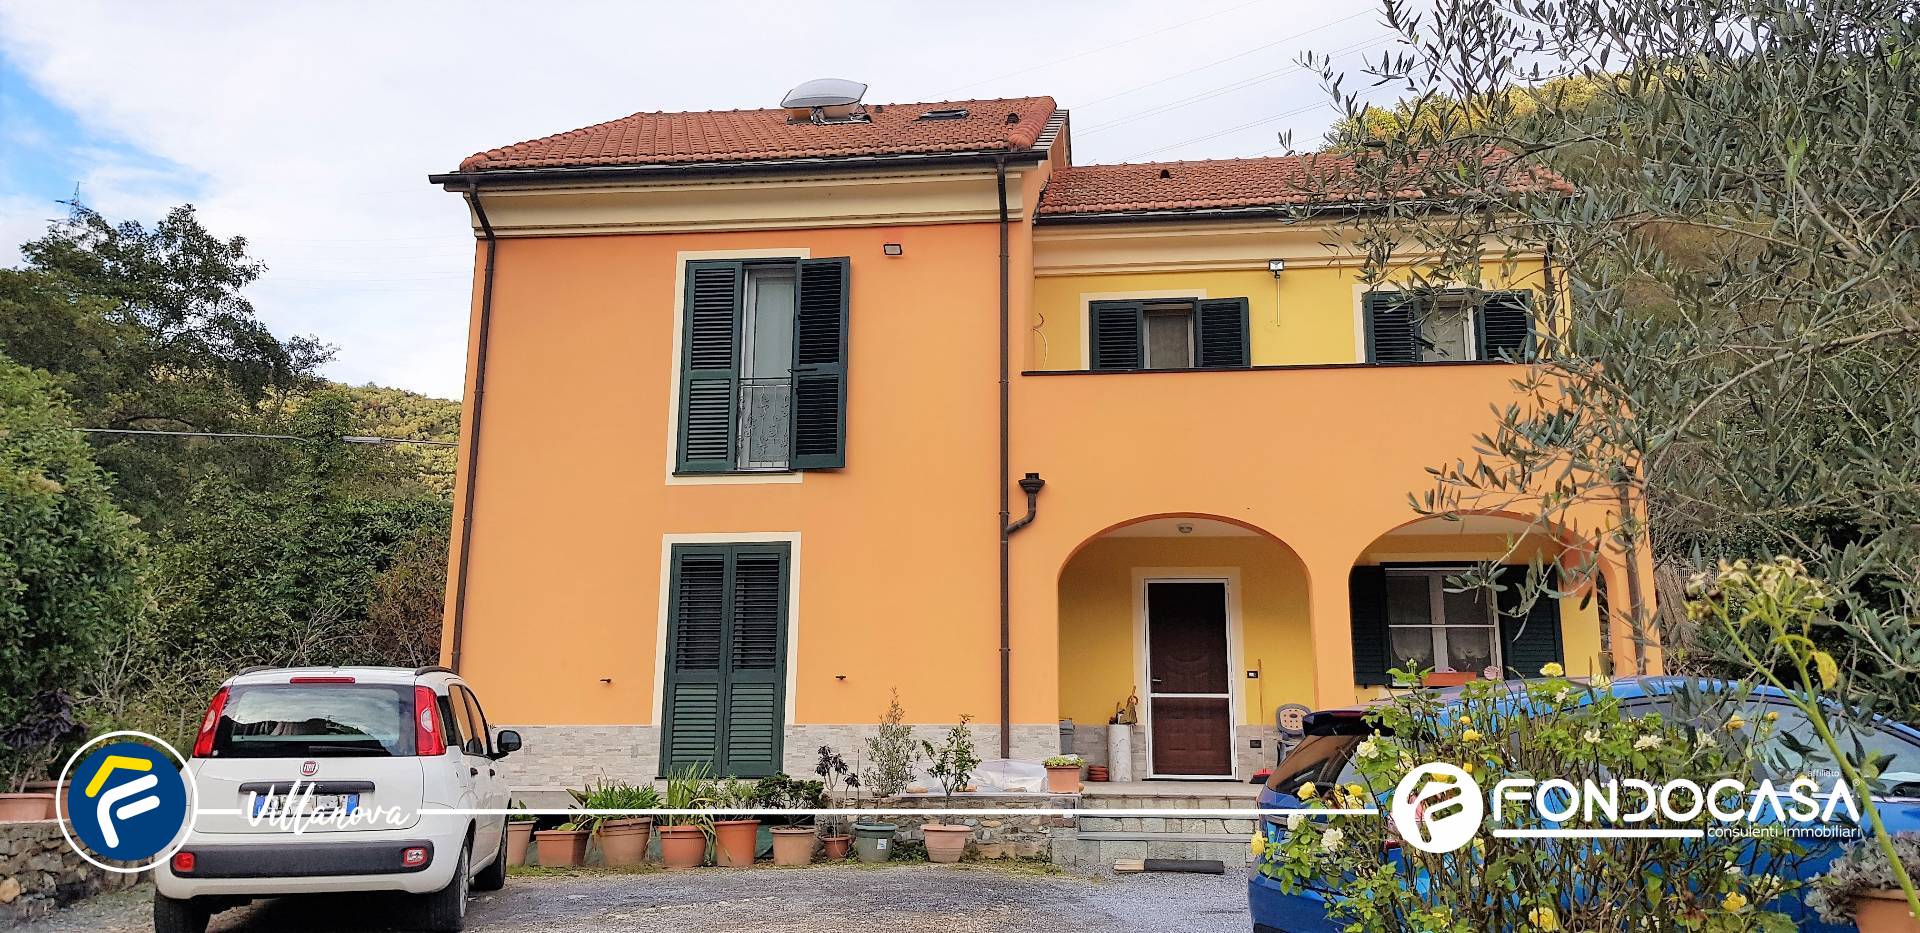 Villa Bifamiliare in vendita a Zuccarello, 7 locali, prezzo € 465.000 | PortaleAgenzieImmobiliari.it